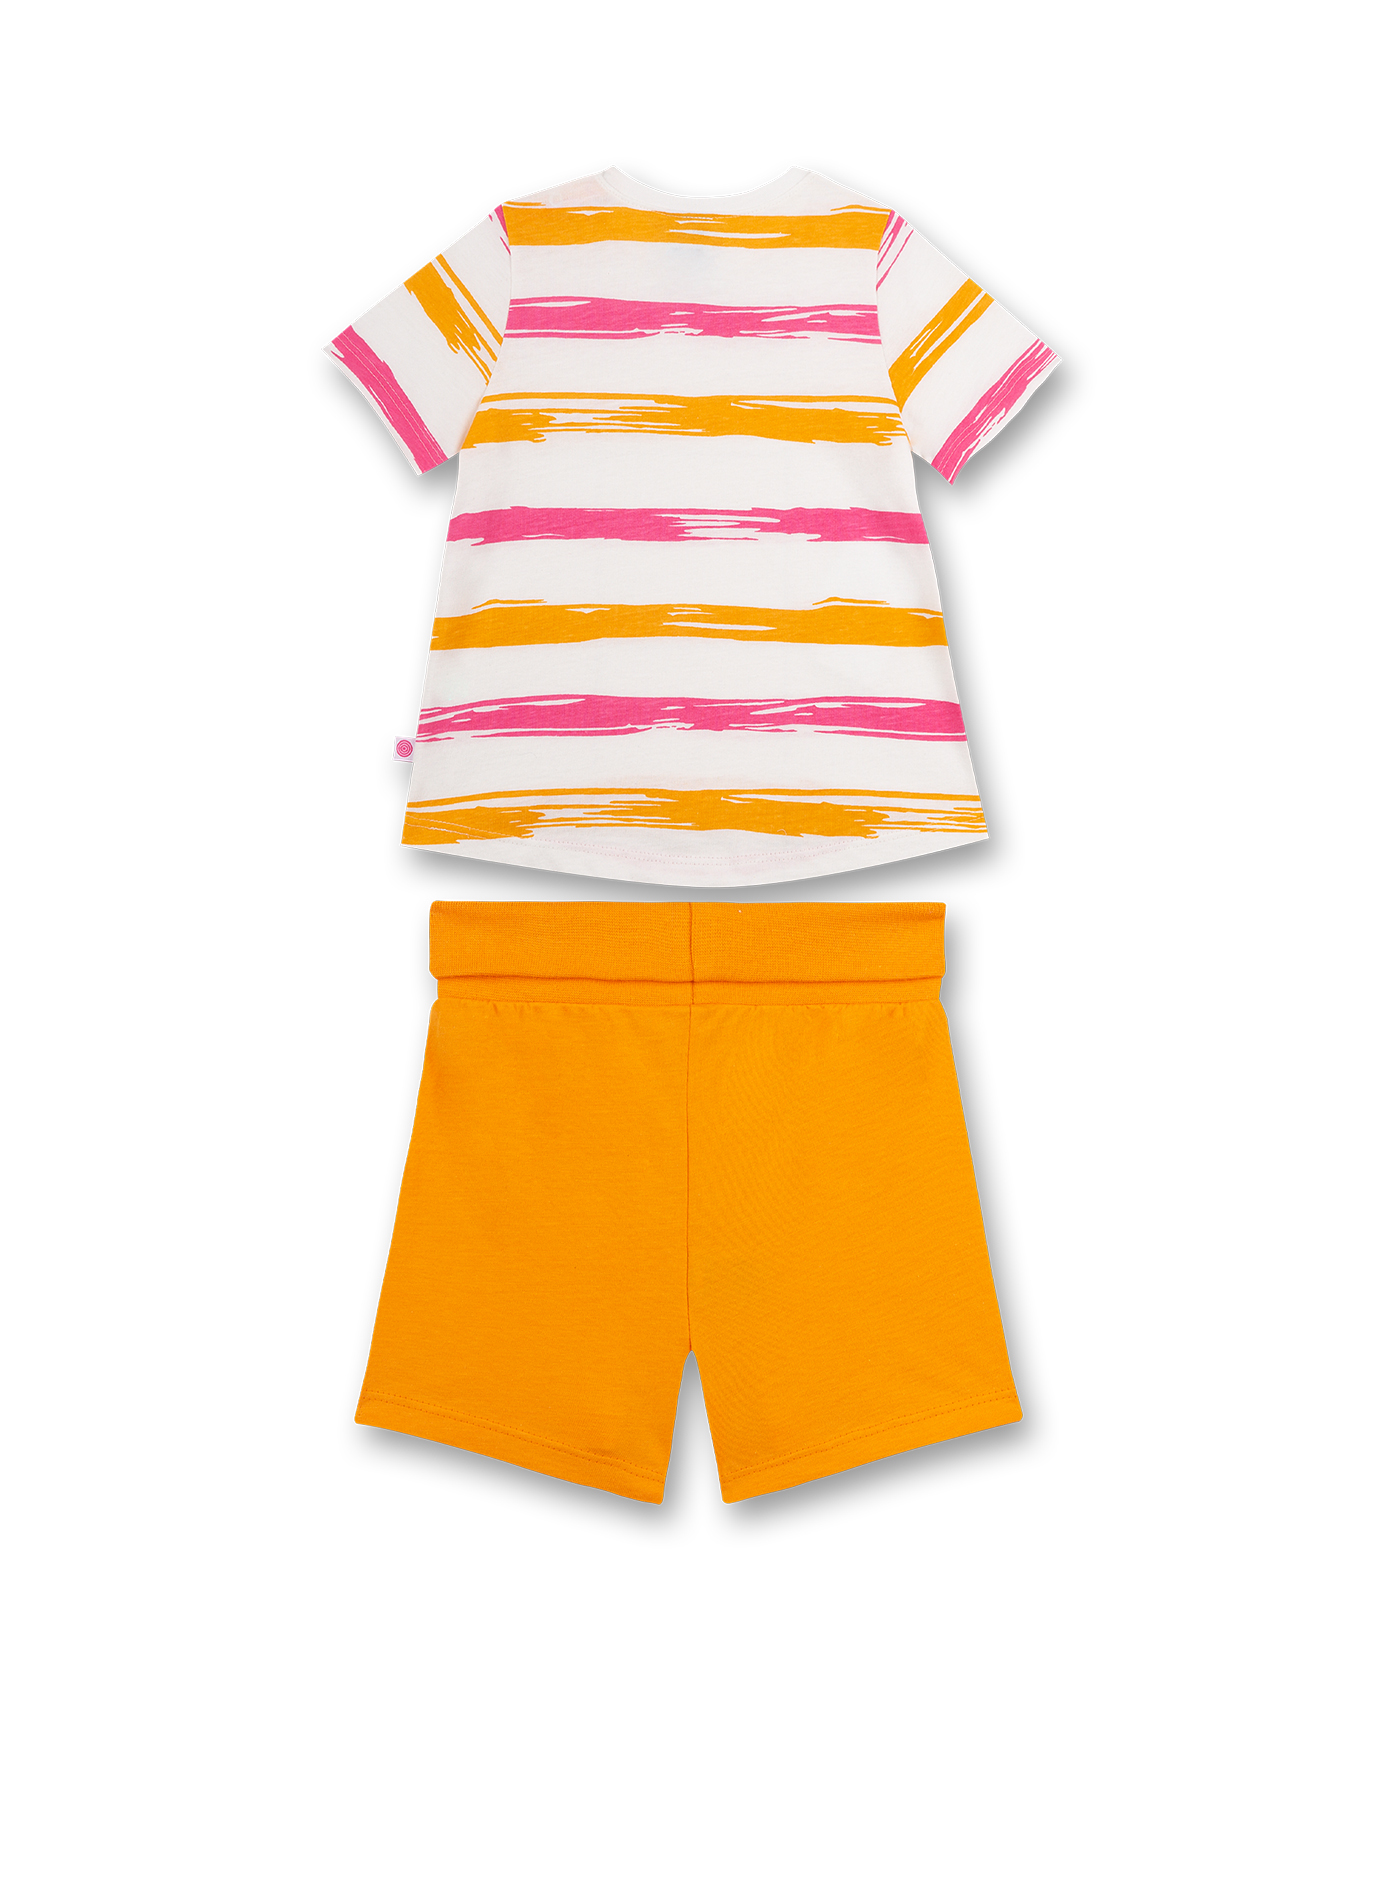 Mädchen-Schlafanzug kurz Orange Happy Pufferfish